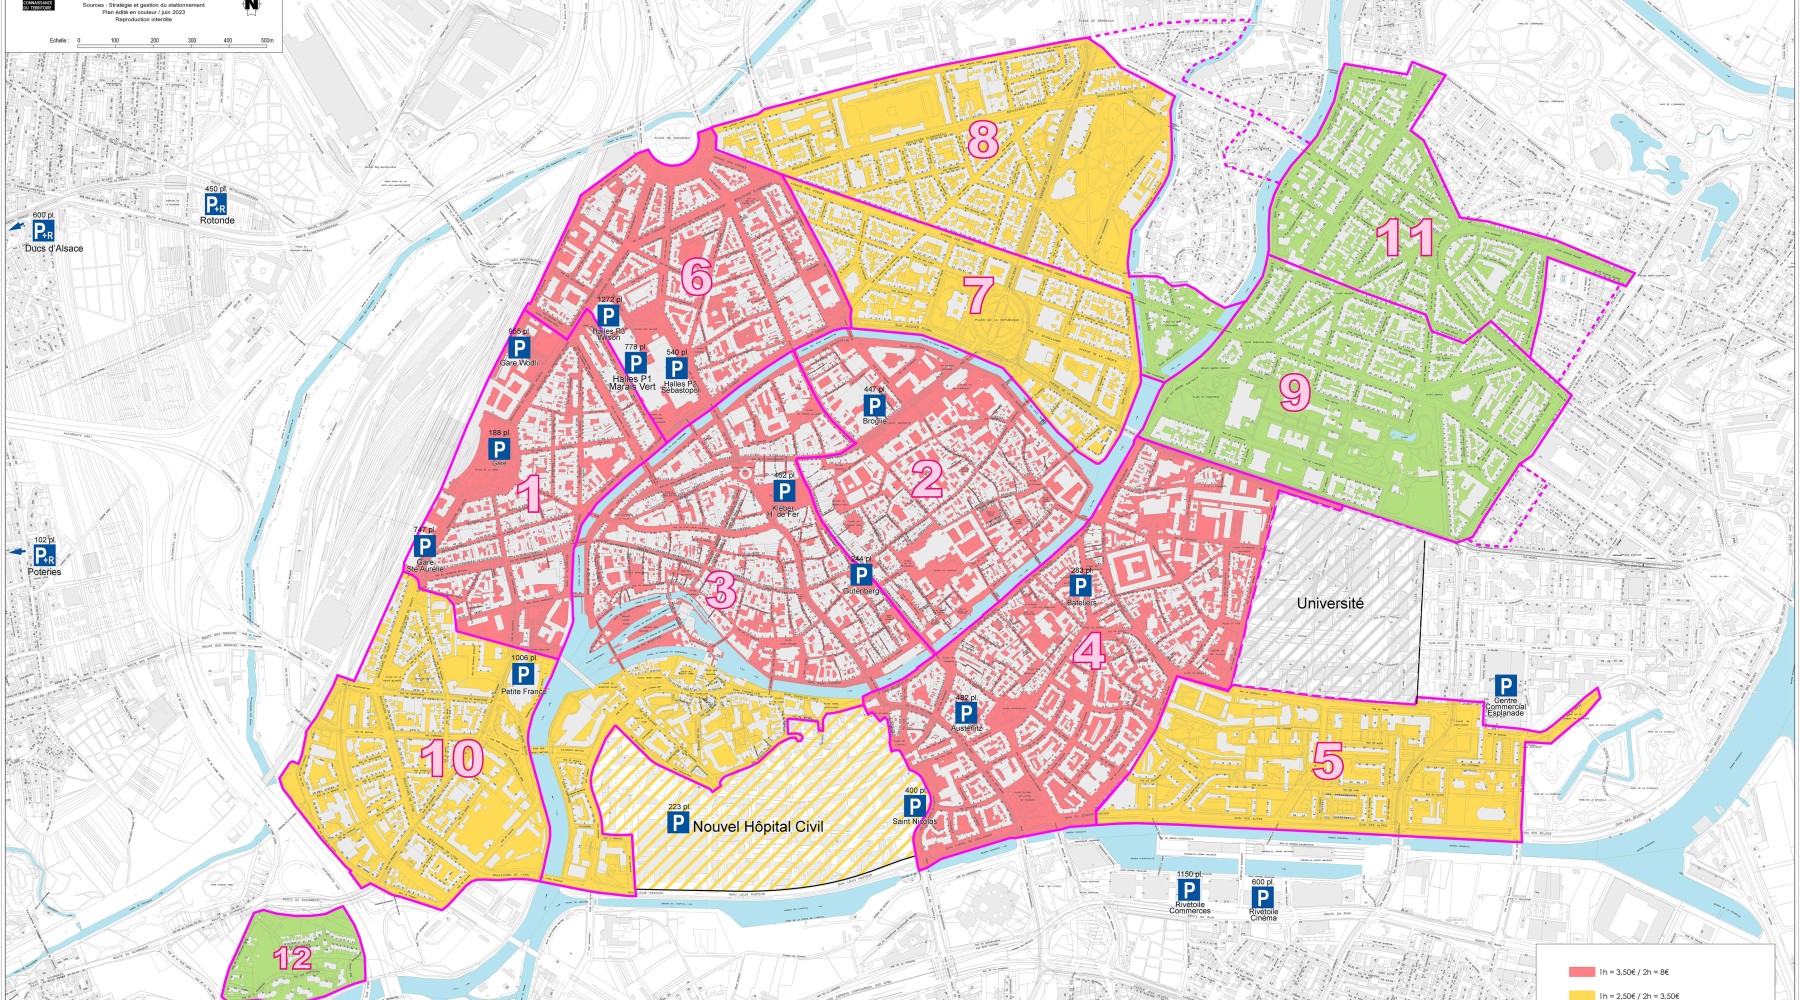 eine Karte der Straßburger Innenstadt, auf welcher die drei Parkzonen rot, gelb und grün markiert sind.                                                 